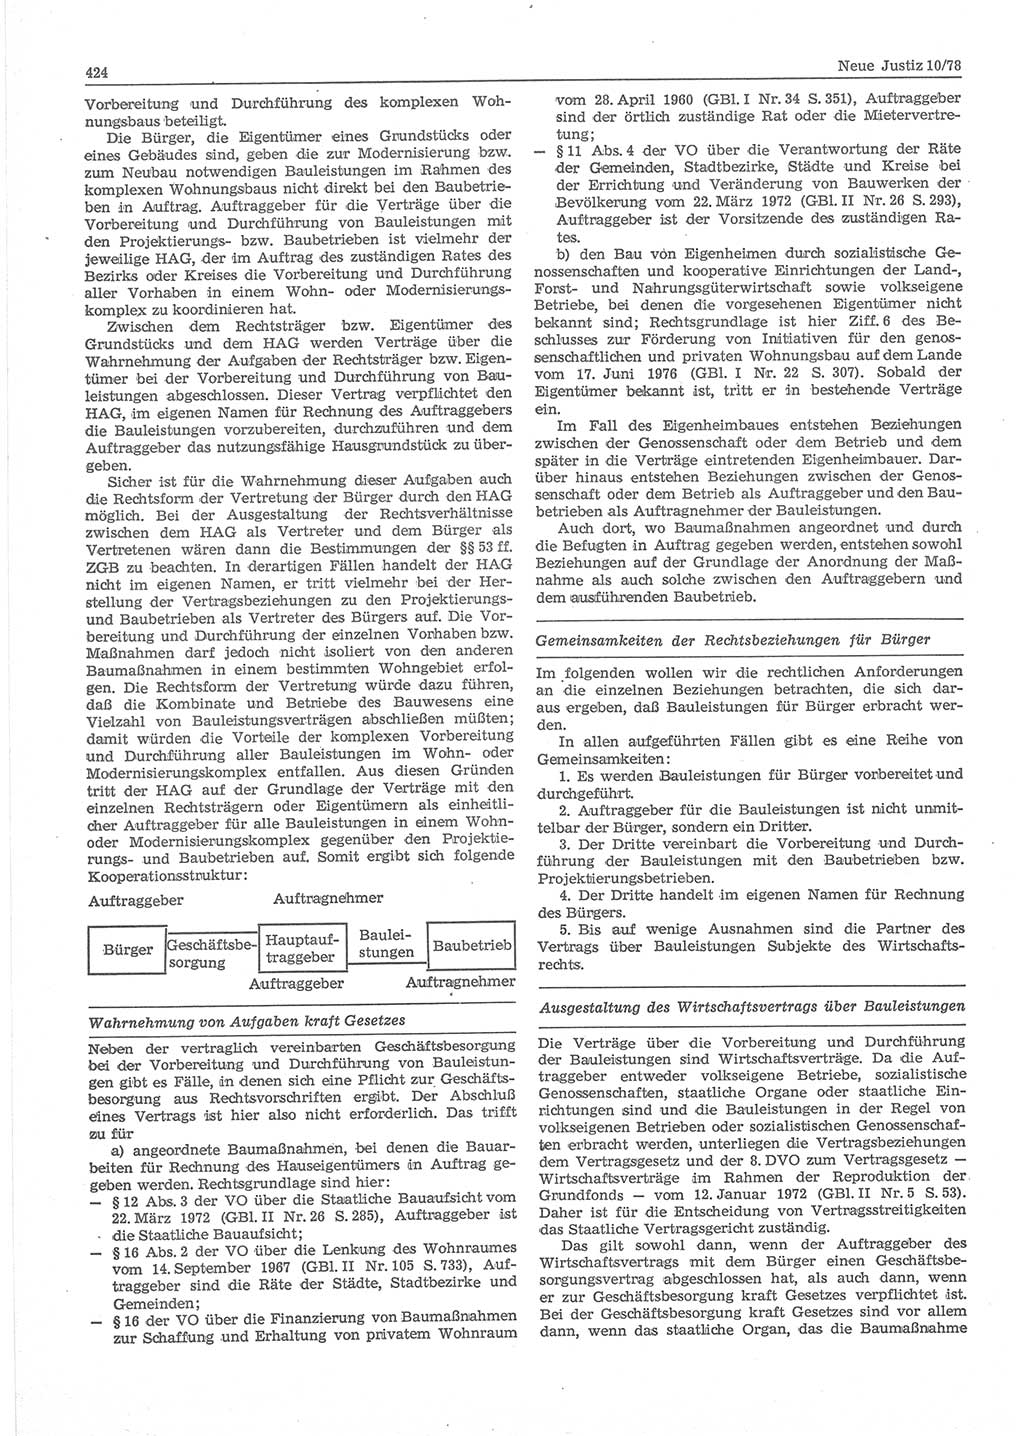 Neue Justiz (NJ), Zeitschrift für sozialistisches Recht und Gesetzlichkeit [Deutsche Demokratische Republik (DDR)], 32. Jahrgang 1978, Seite 424 (NJ DDR 1978, S. 424)